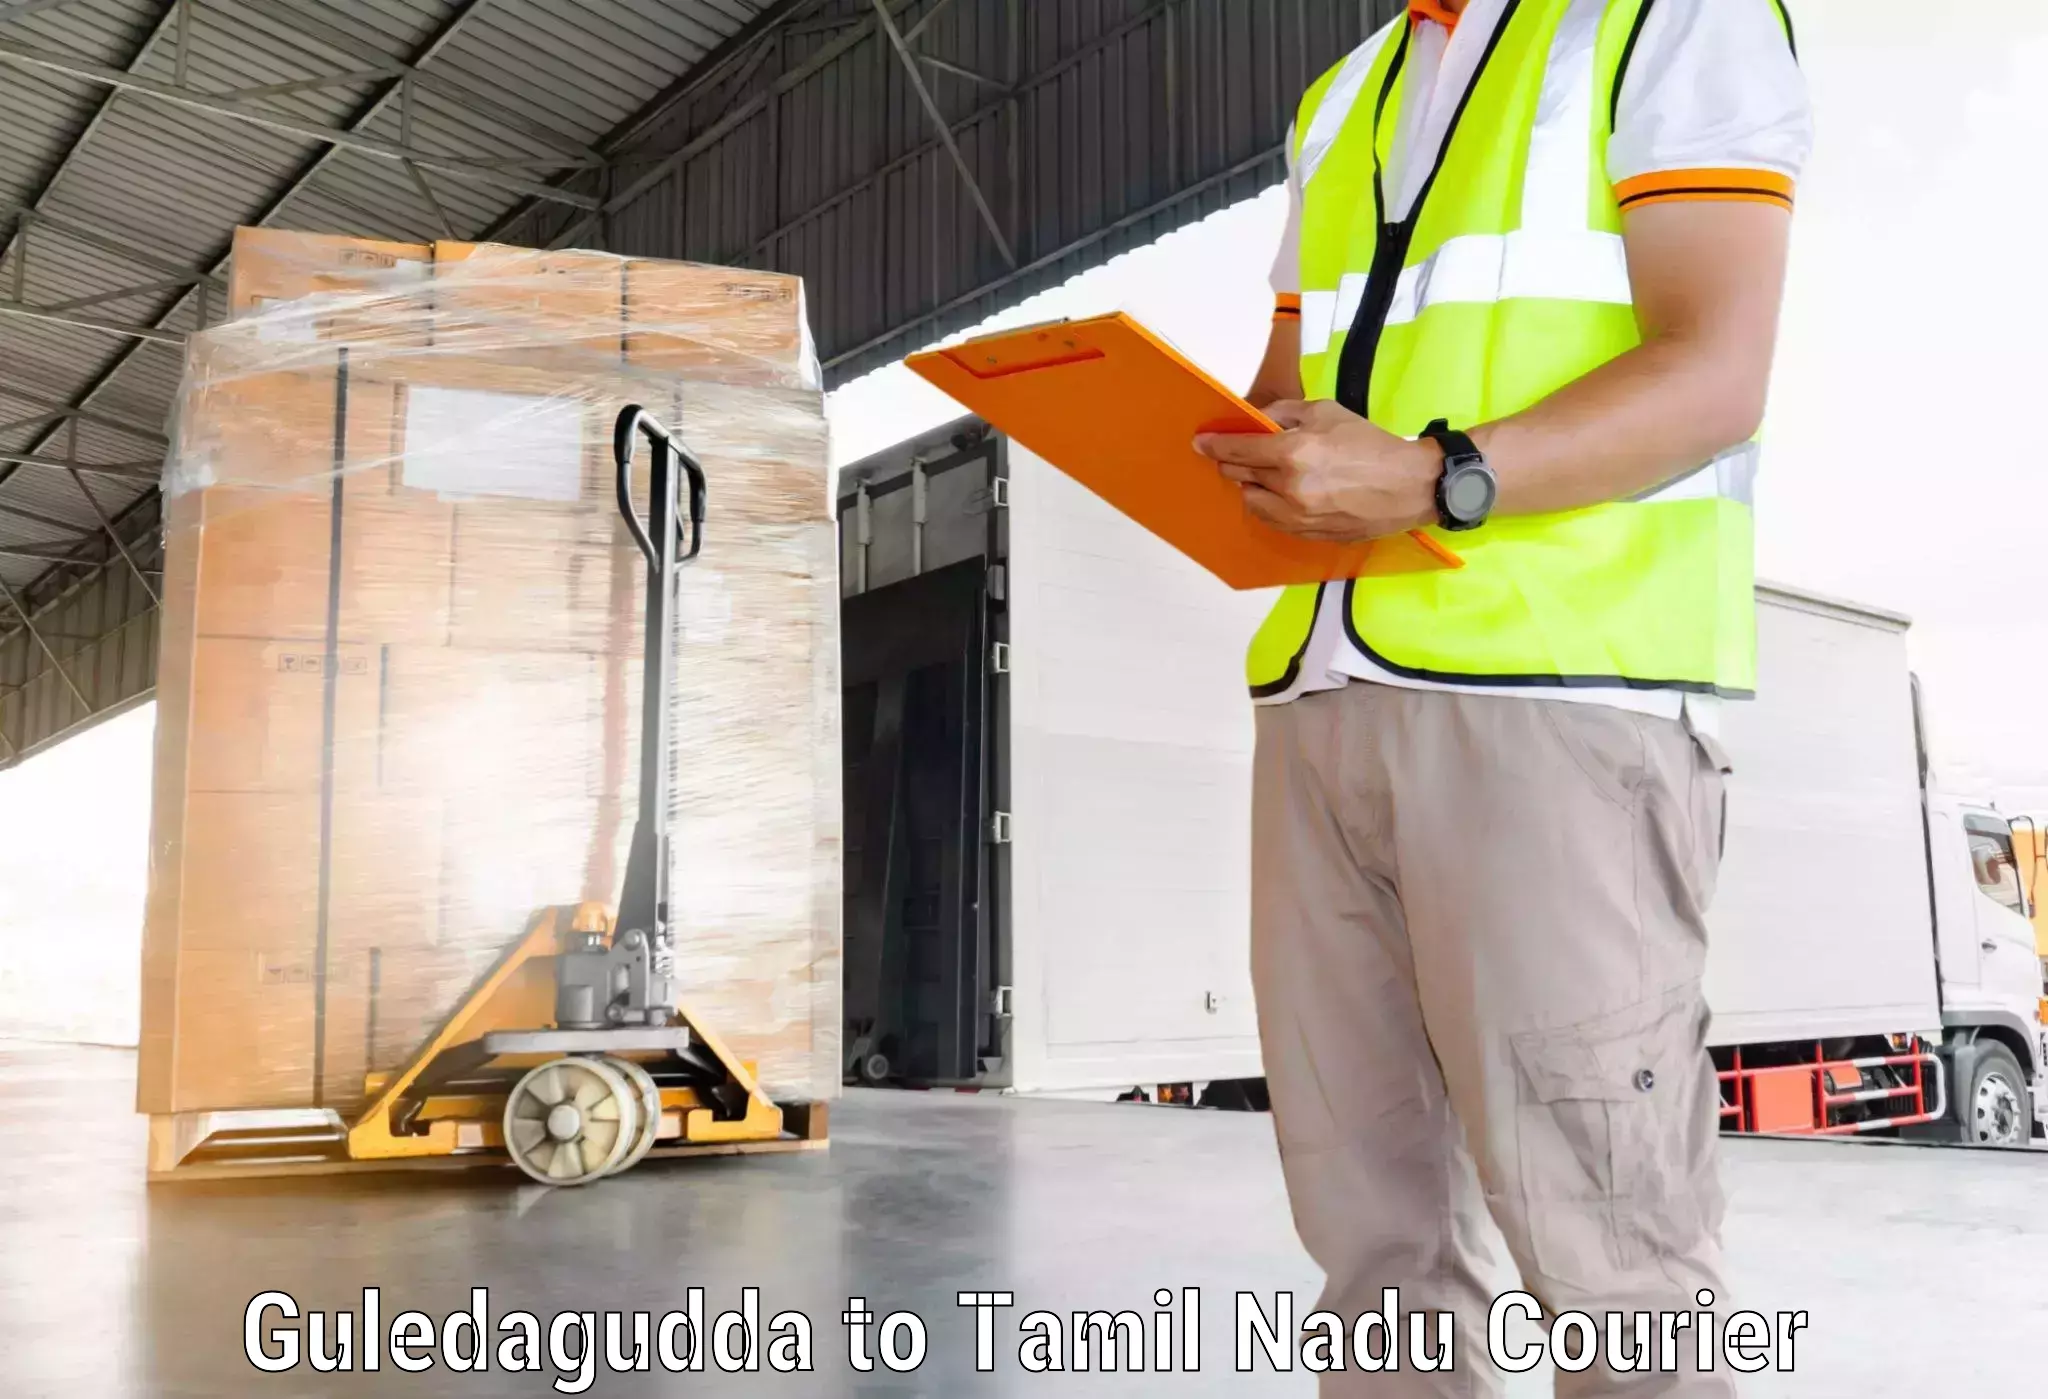 Courier tracking online Guledagudda to Thuraiyur